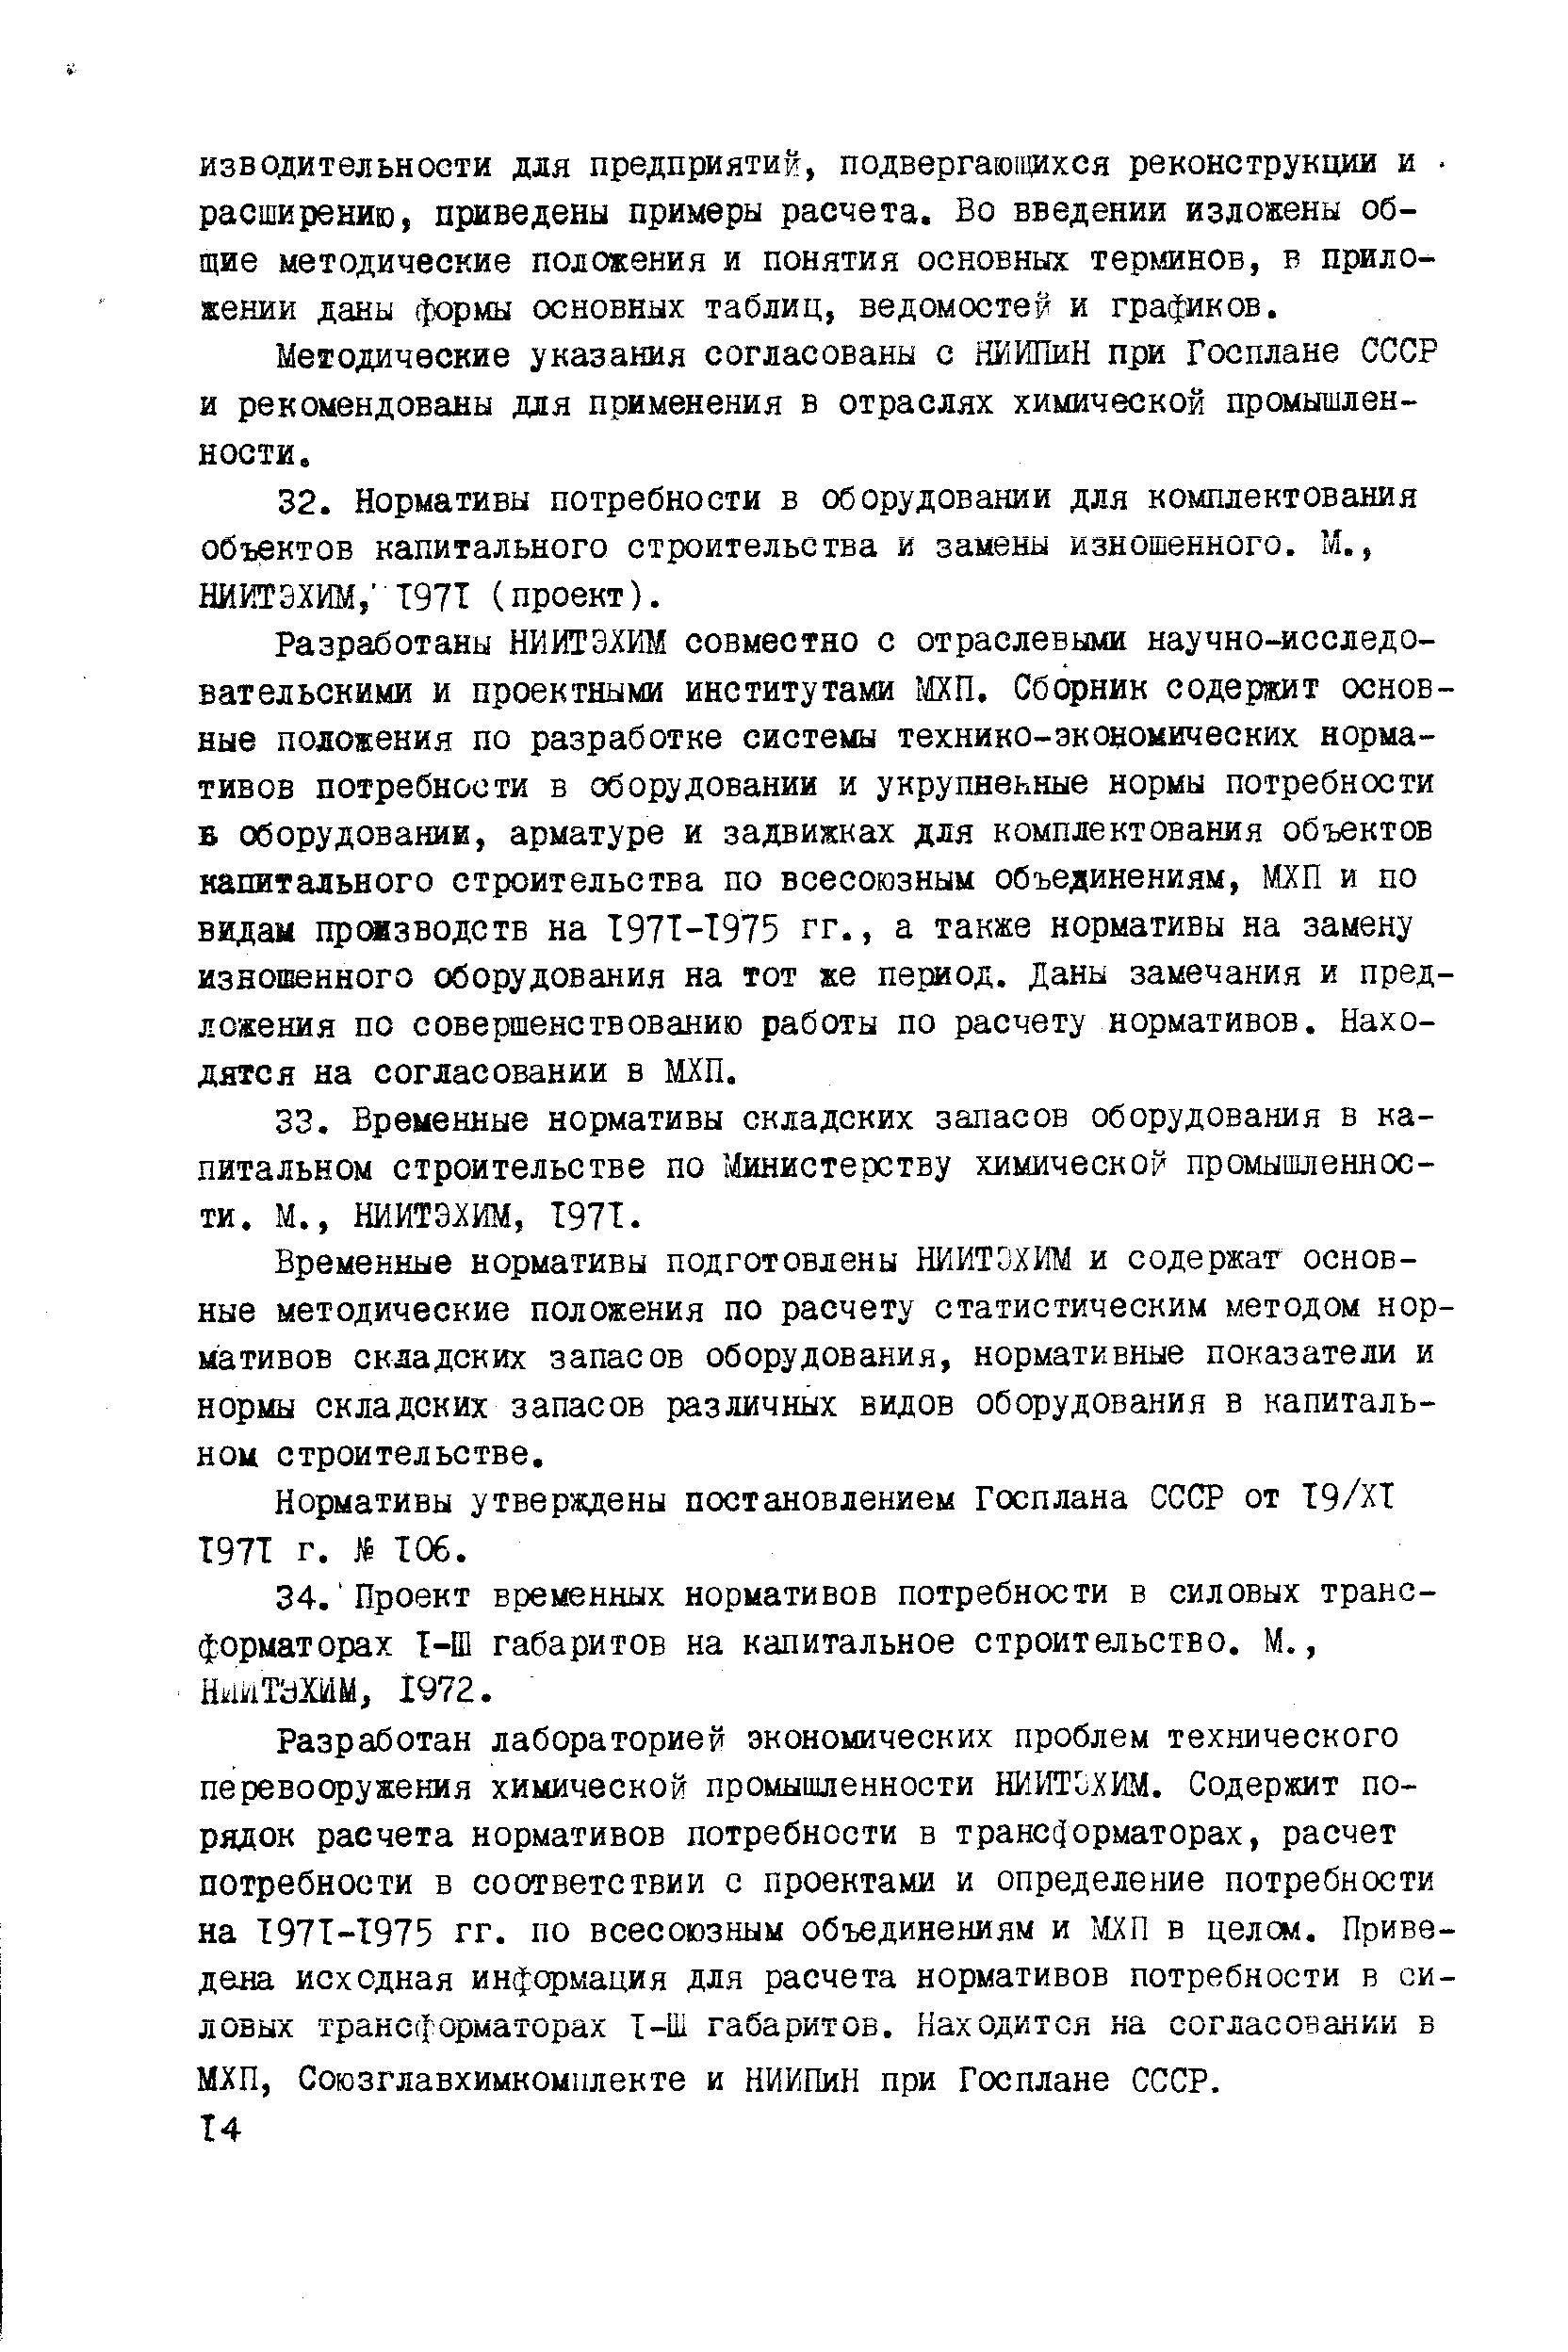 Методические указания согласованы с ШИПиН при Госплане СССР и рекомендованы для применения в отраслях химической промышленности.